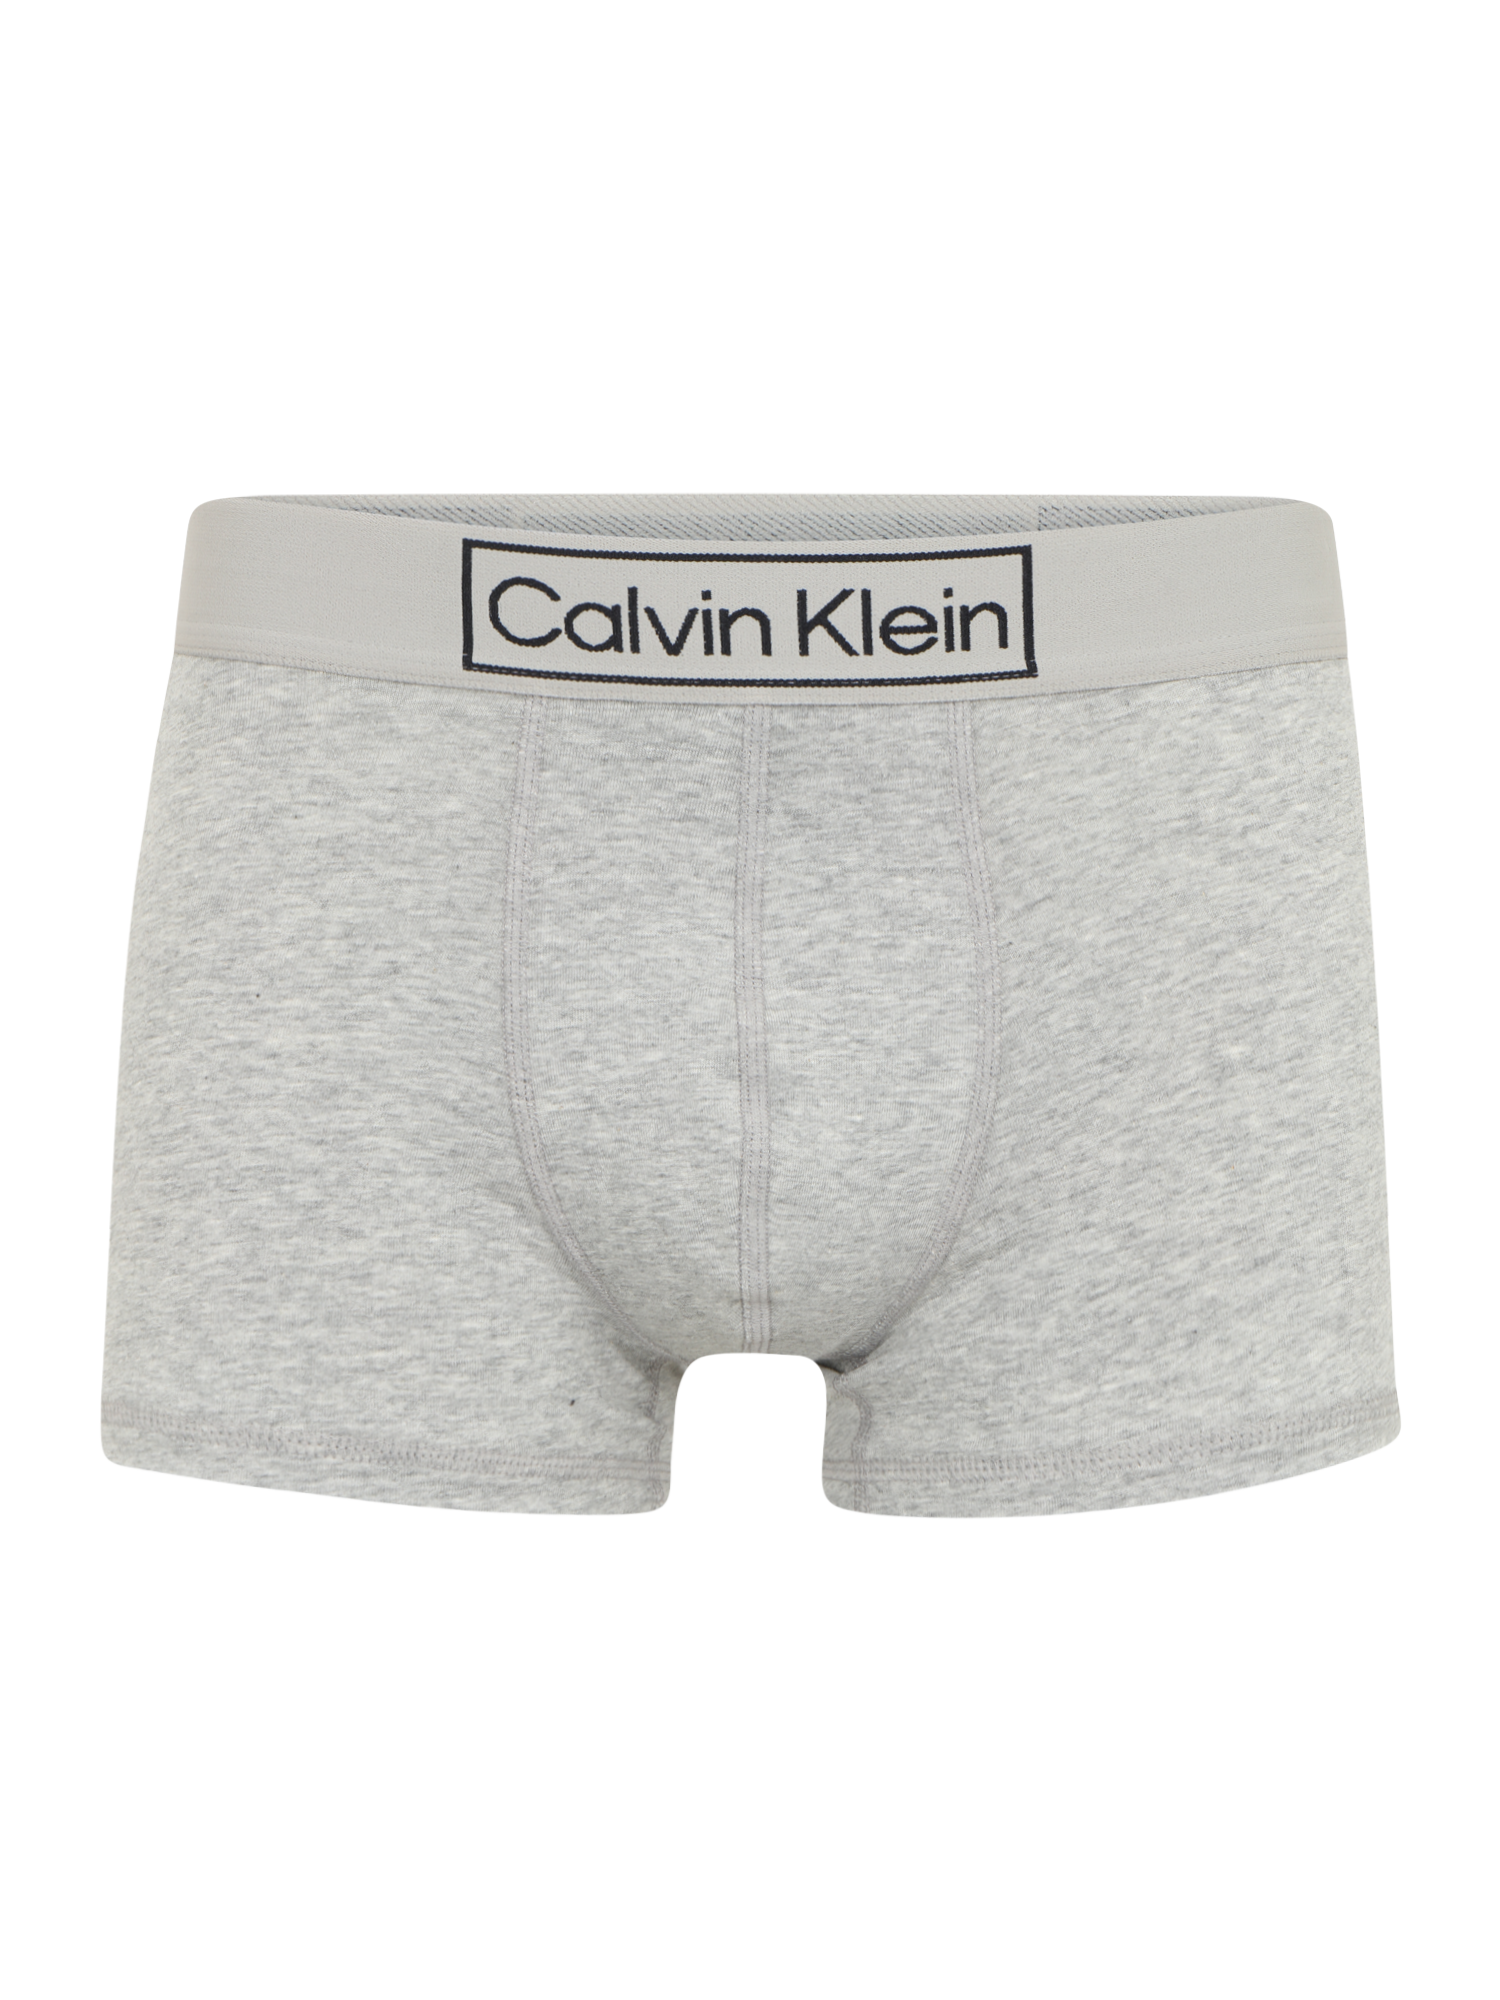 Mężczyźni Odzież Calvin Klein Underwear Bokserki w kolorze Nakrapiany Szarym 